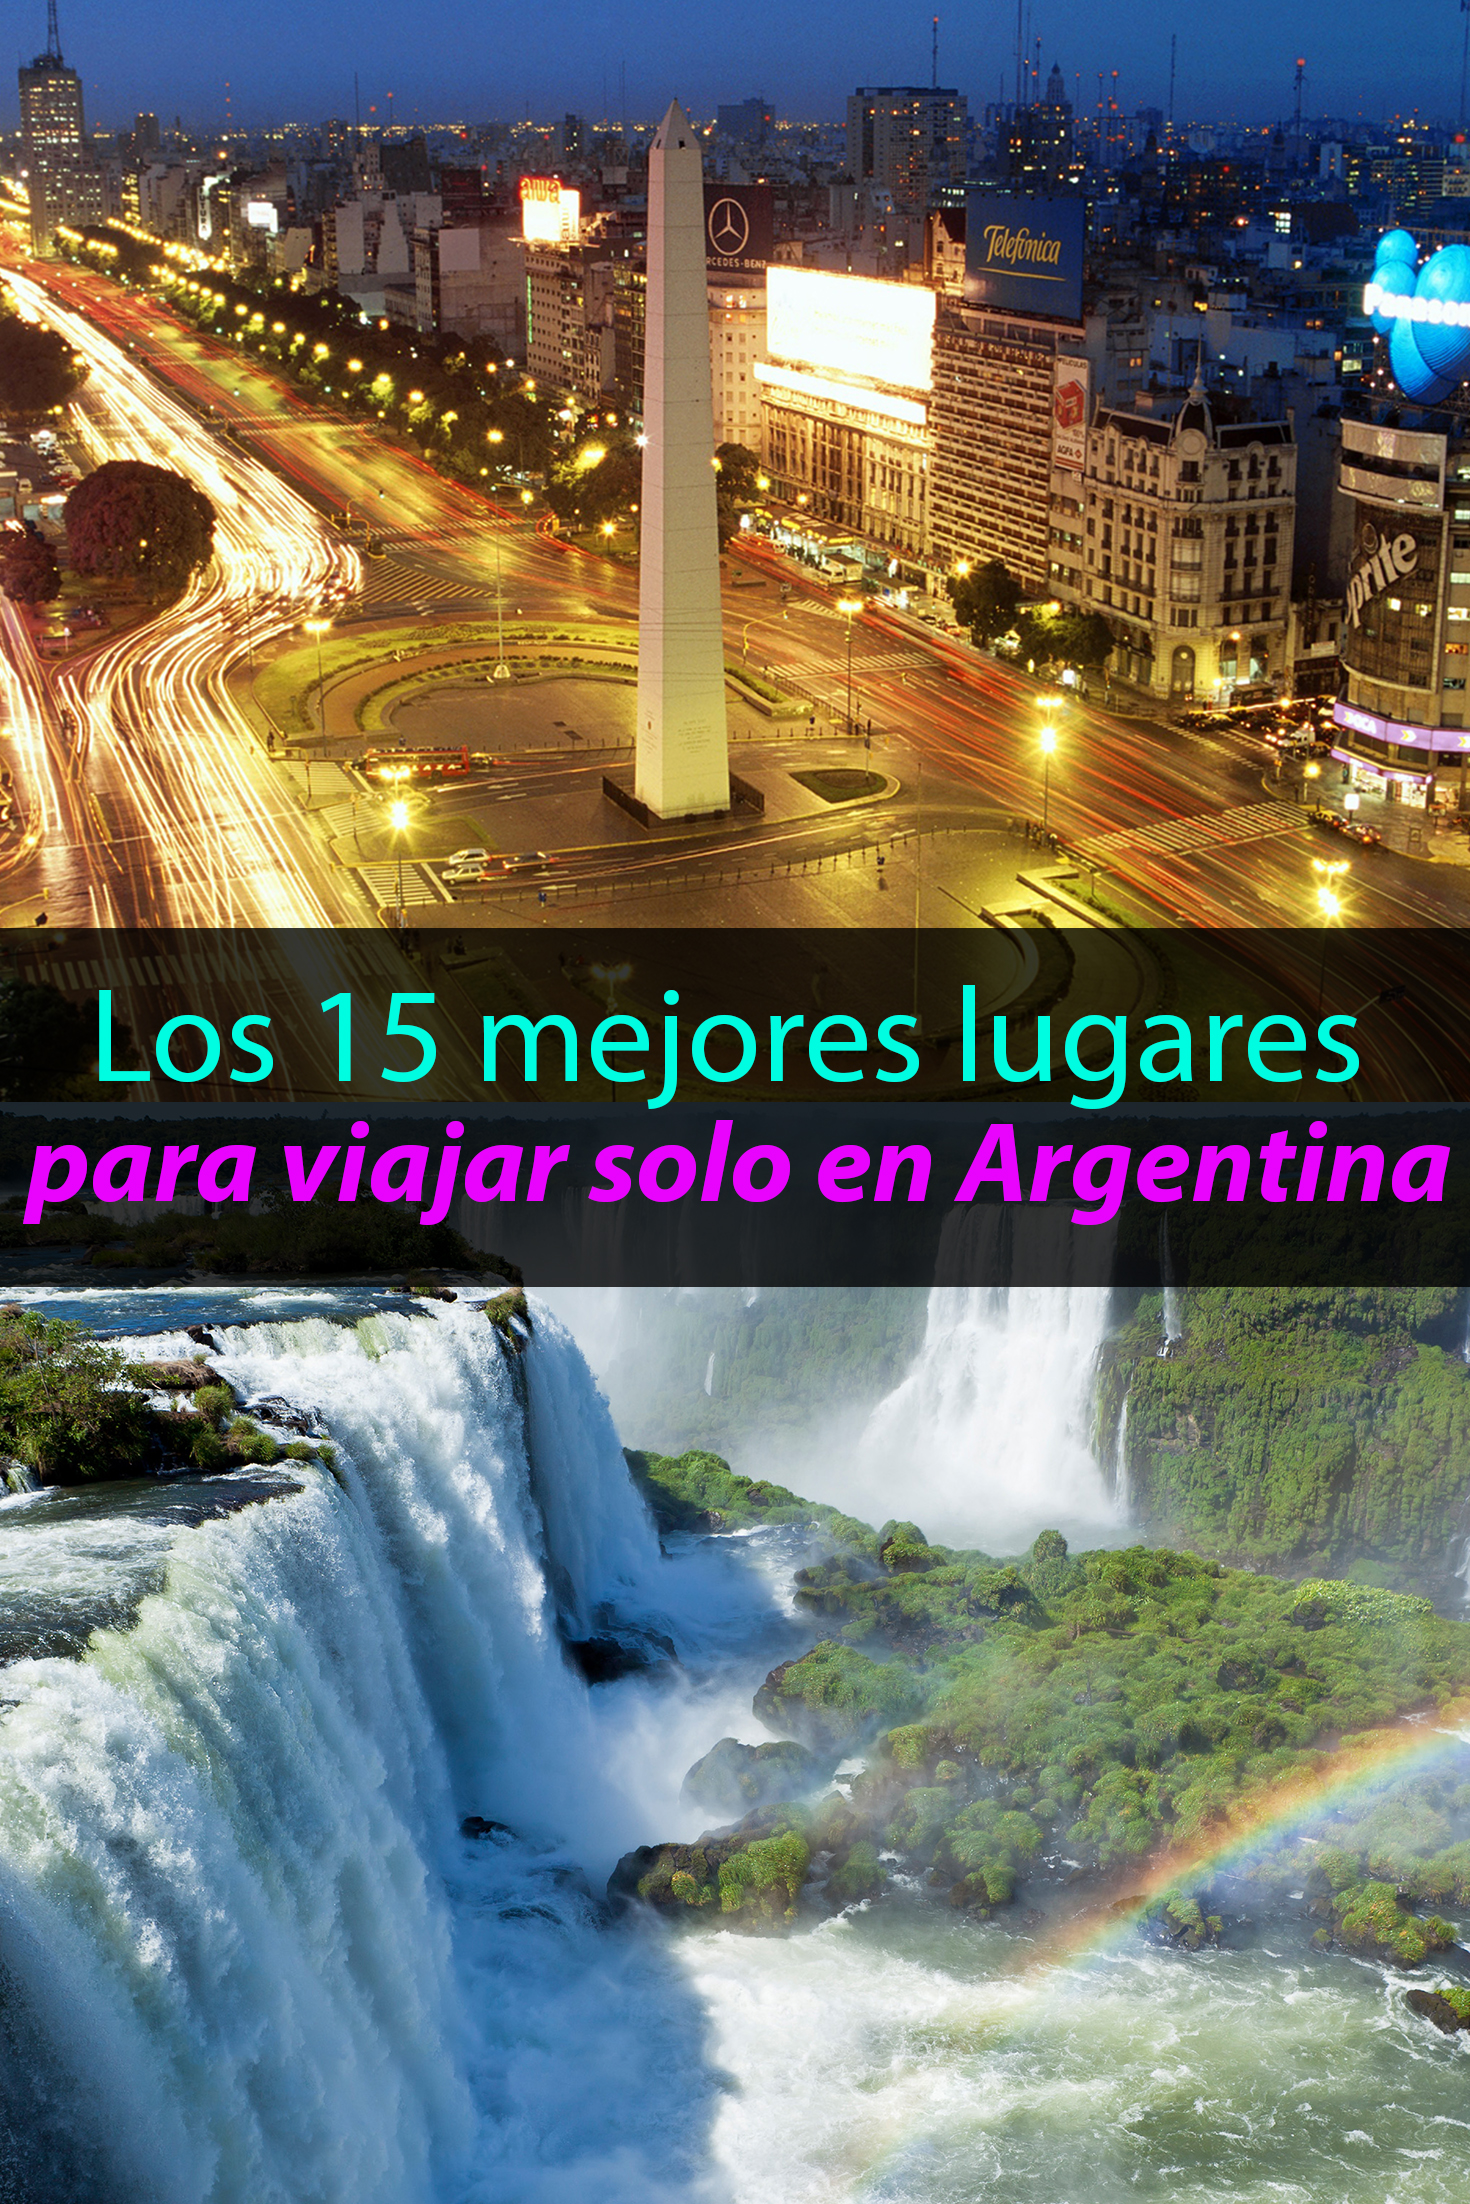 Los 15 mejores lugares para viajar solo en Argentina